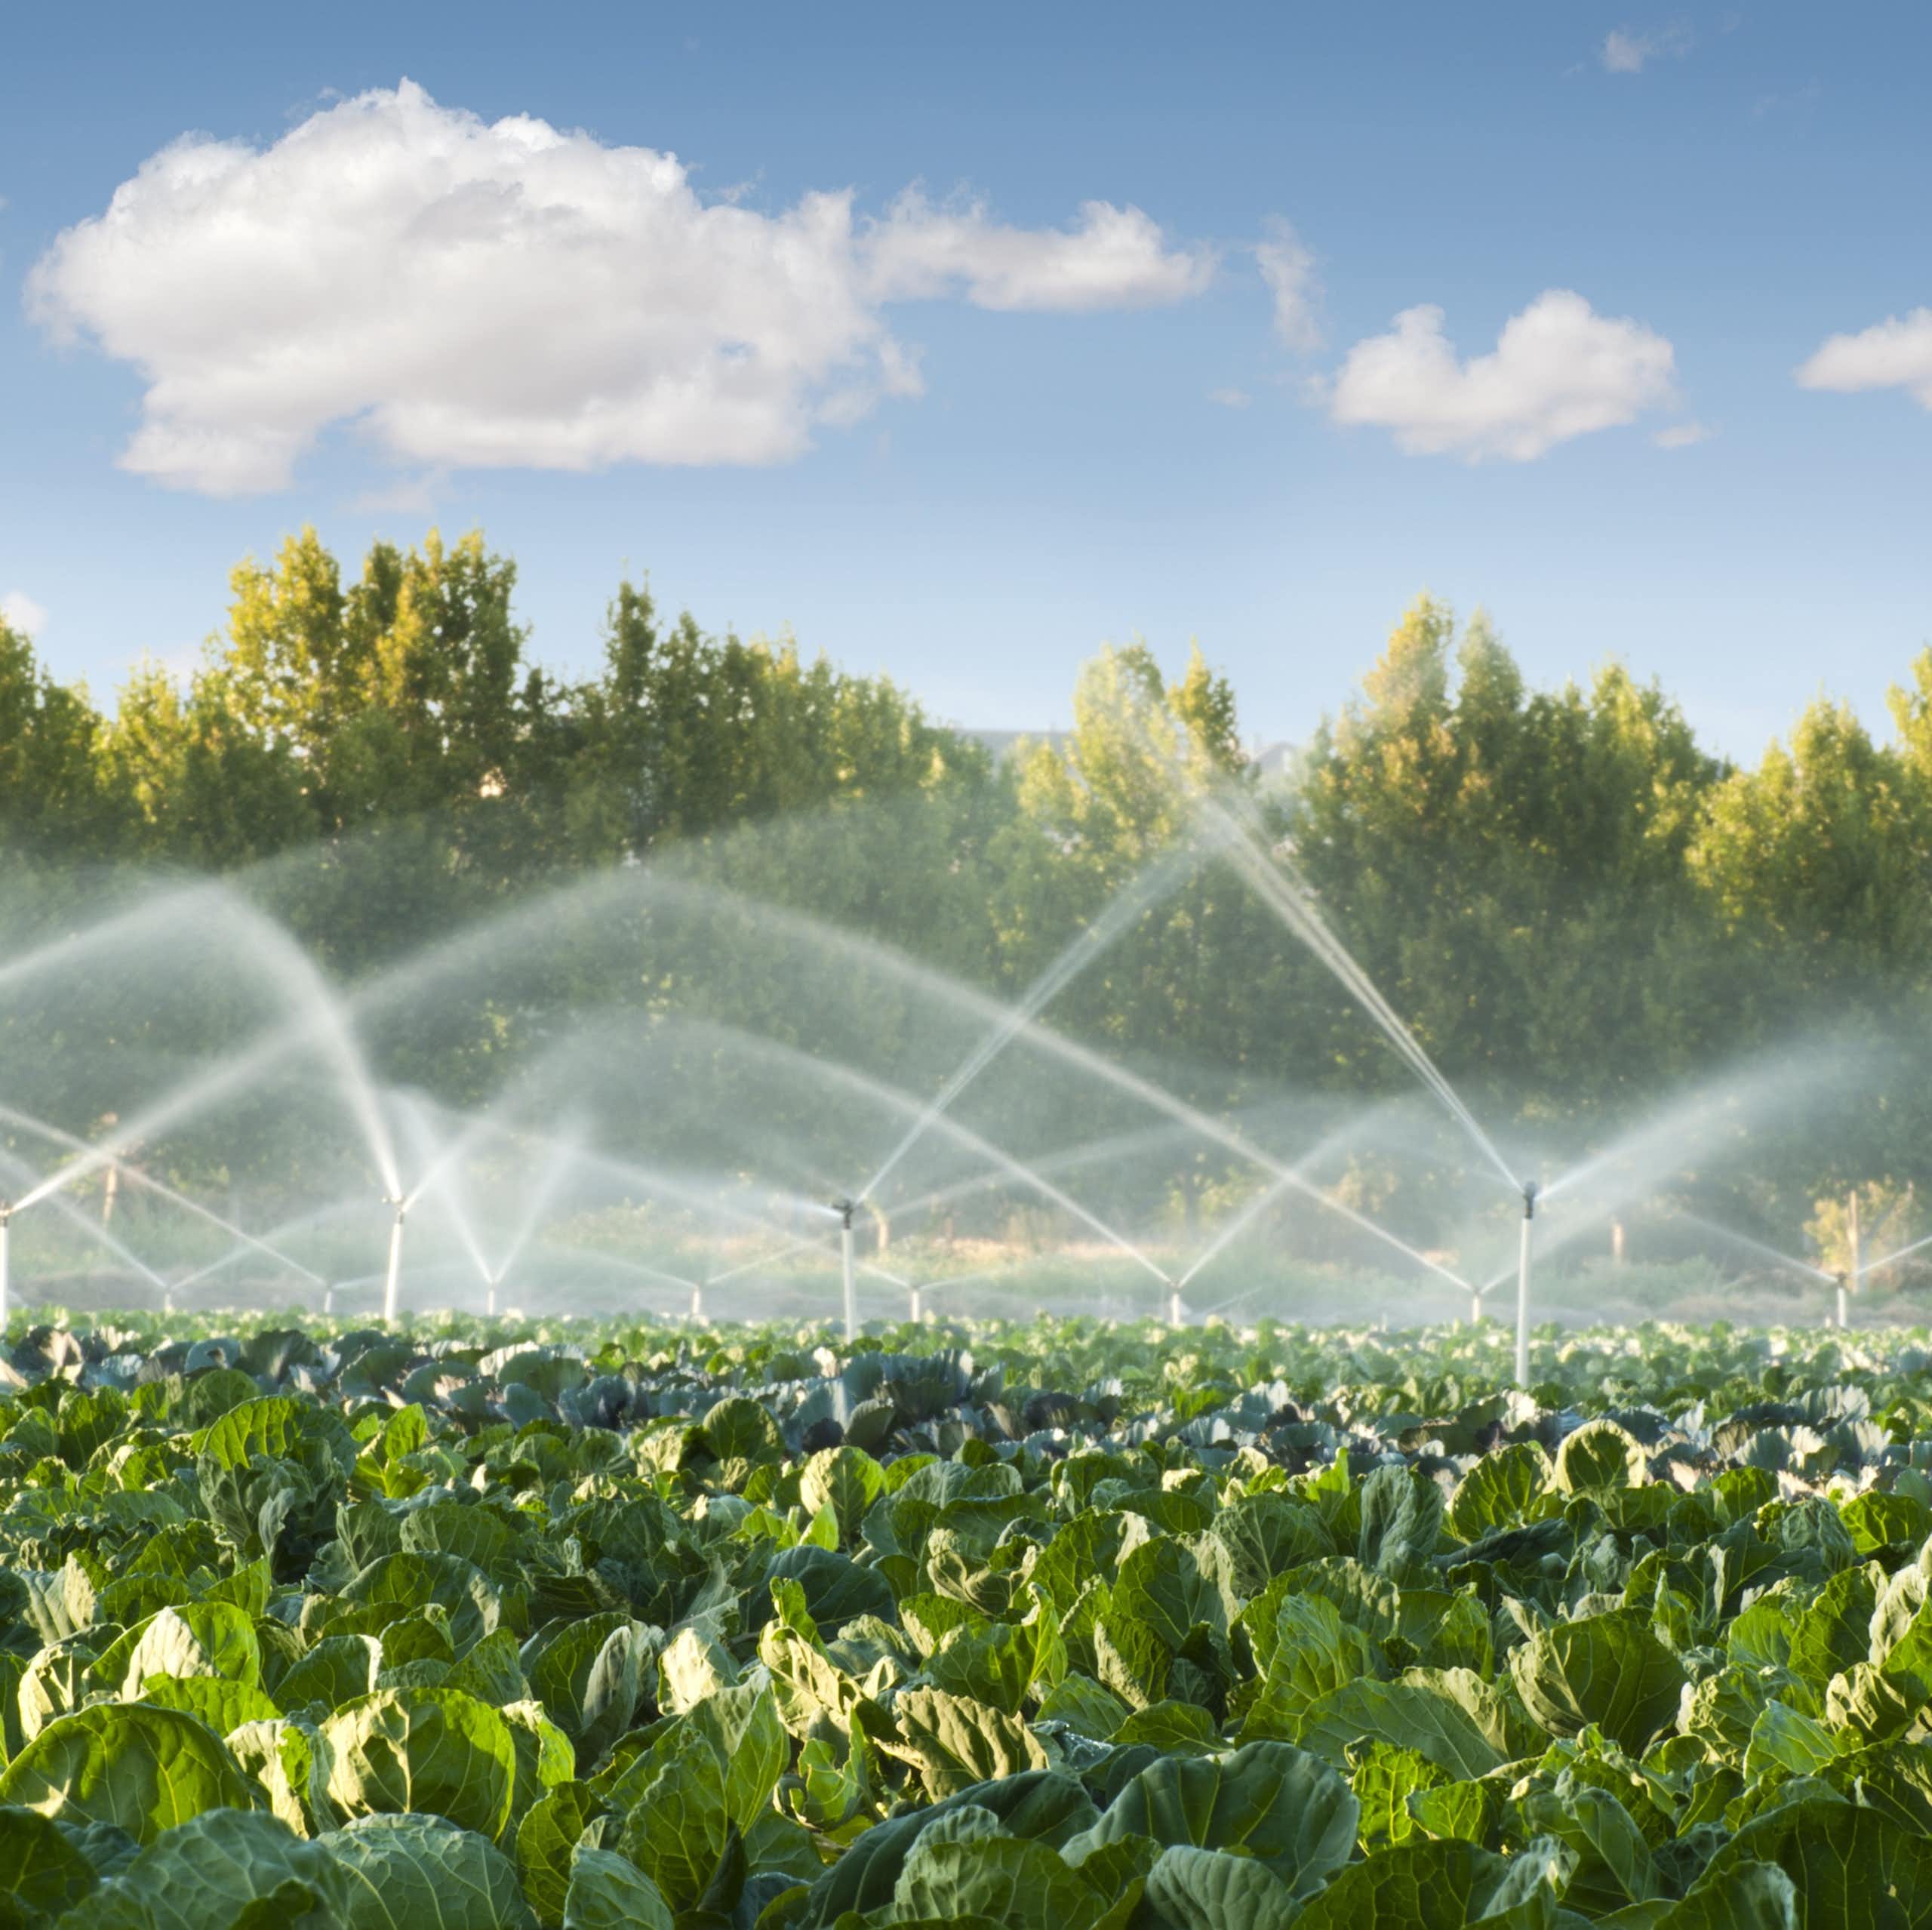 Un campo de cultivo recibe agua de los aspersores.